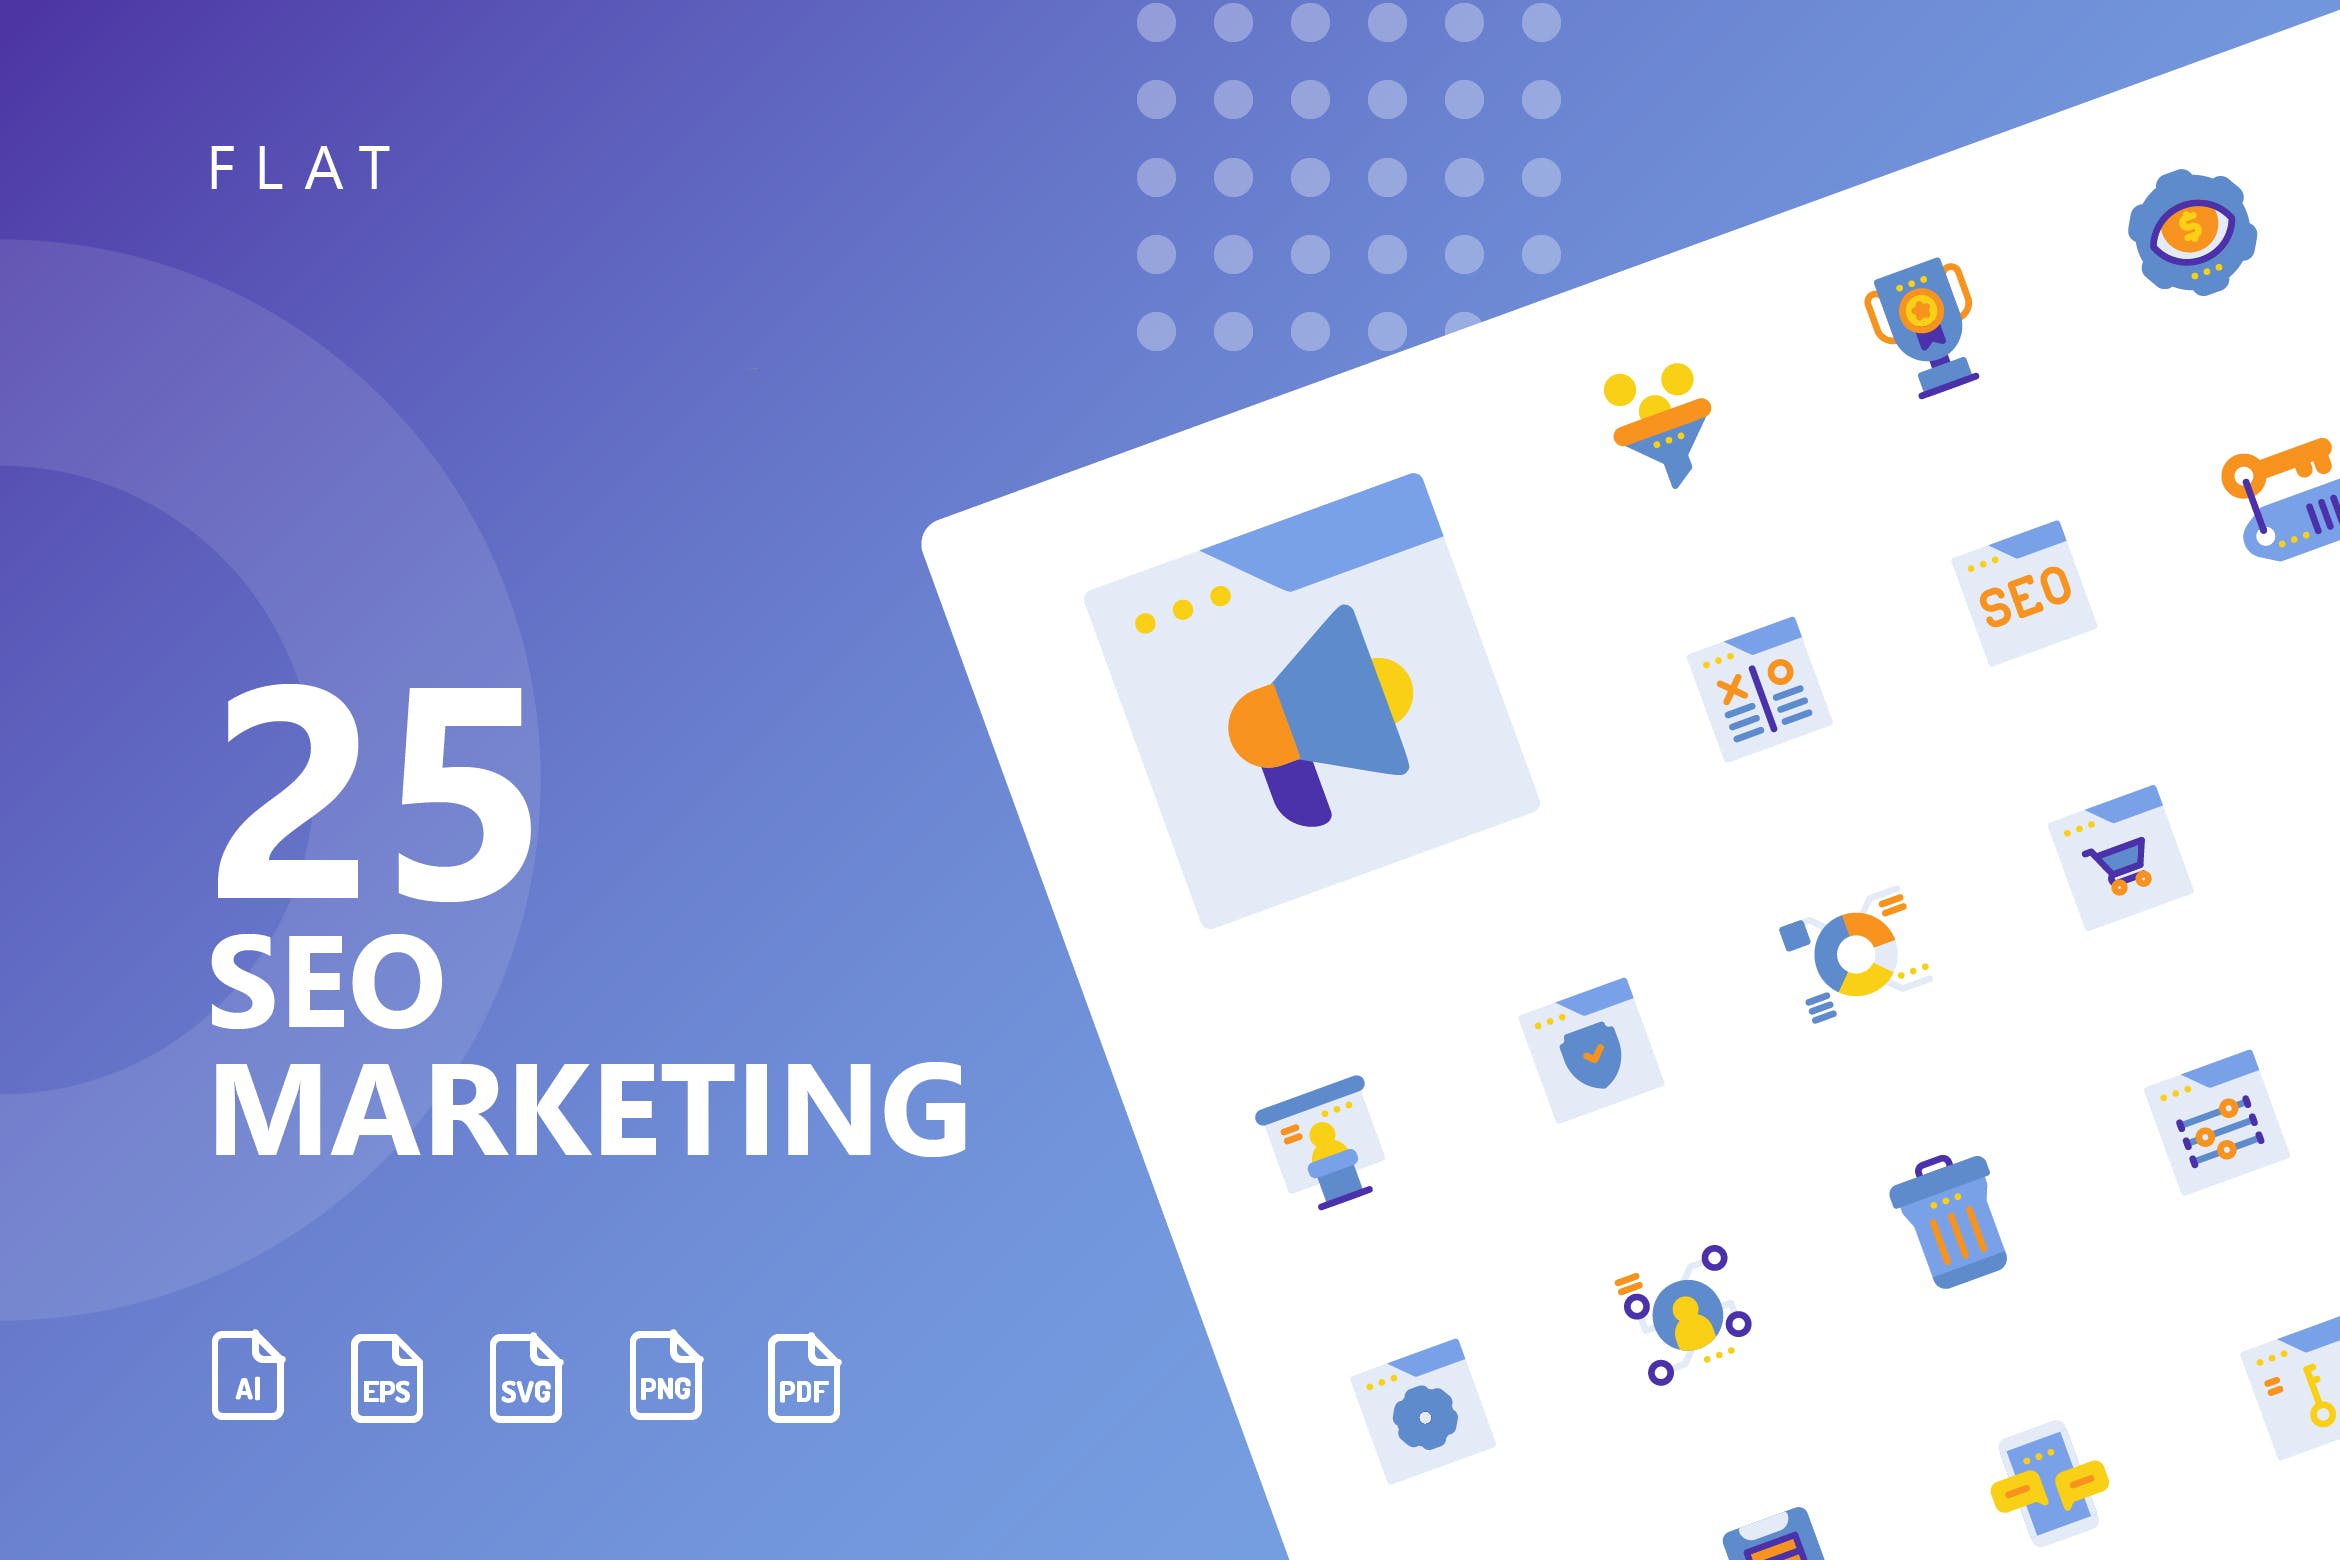 25枚SEO搜索引擎优化营销扁平化矢量蚂蚁素材精选图标v2 SEO Marketing Flat Icons插图